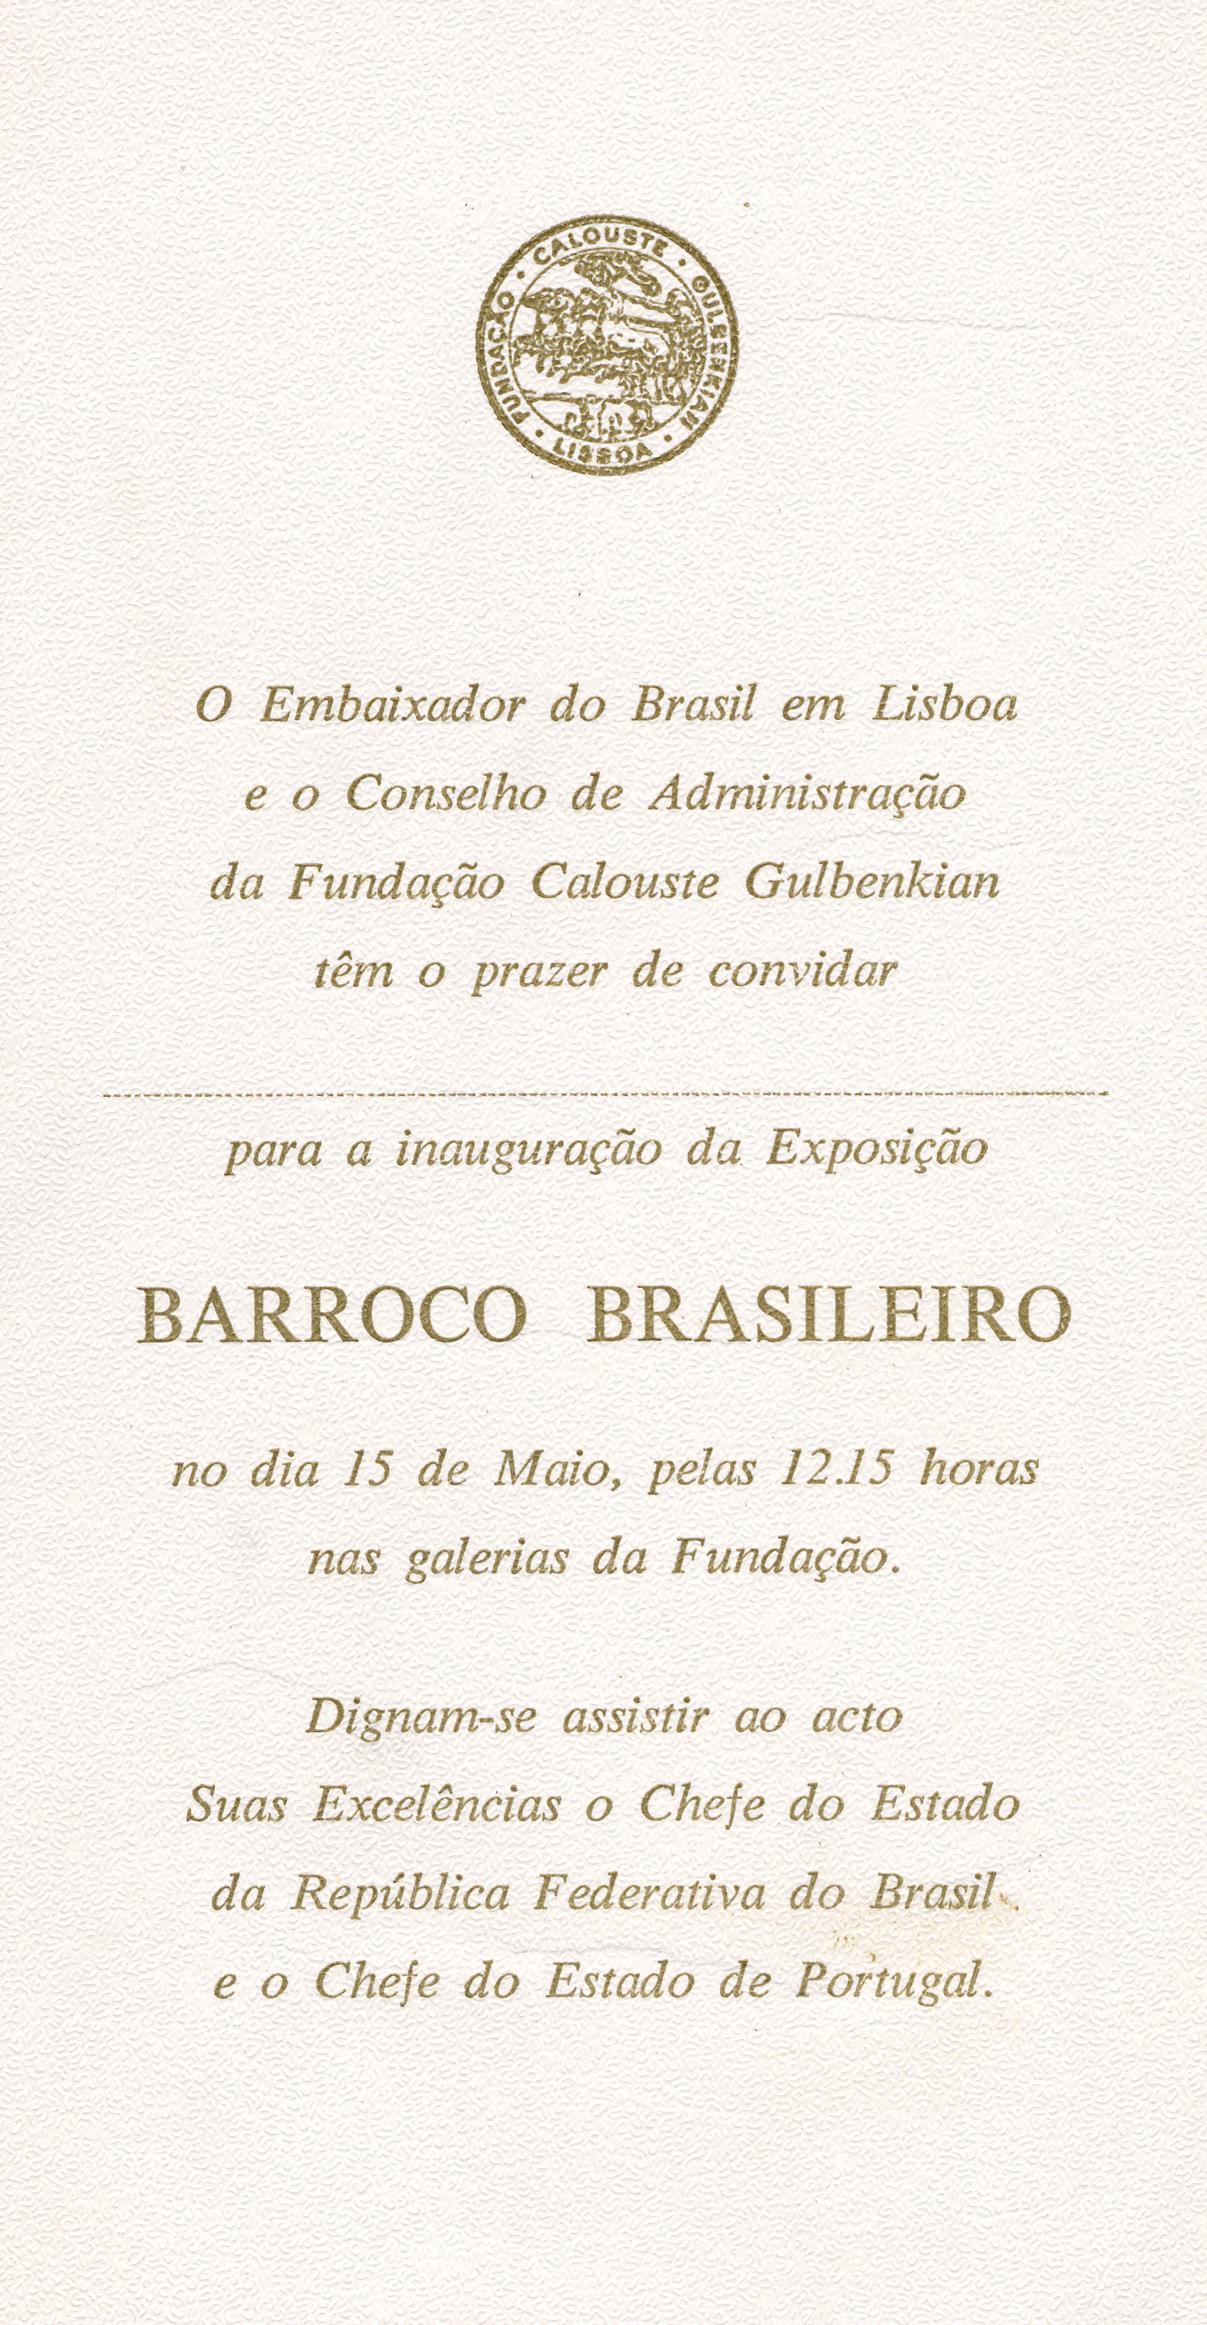 Barroco Brasileiro